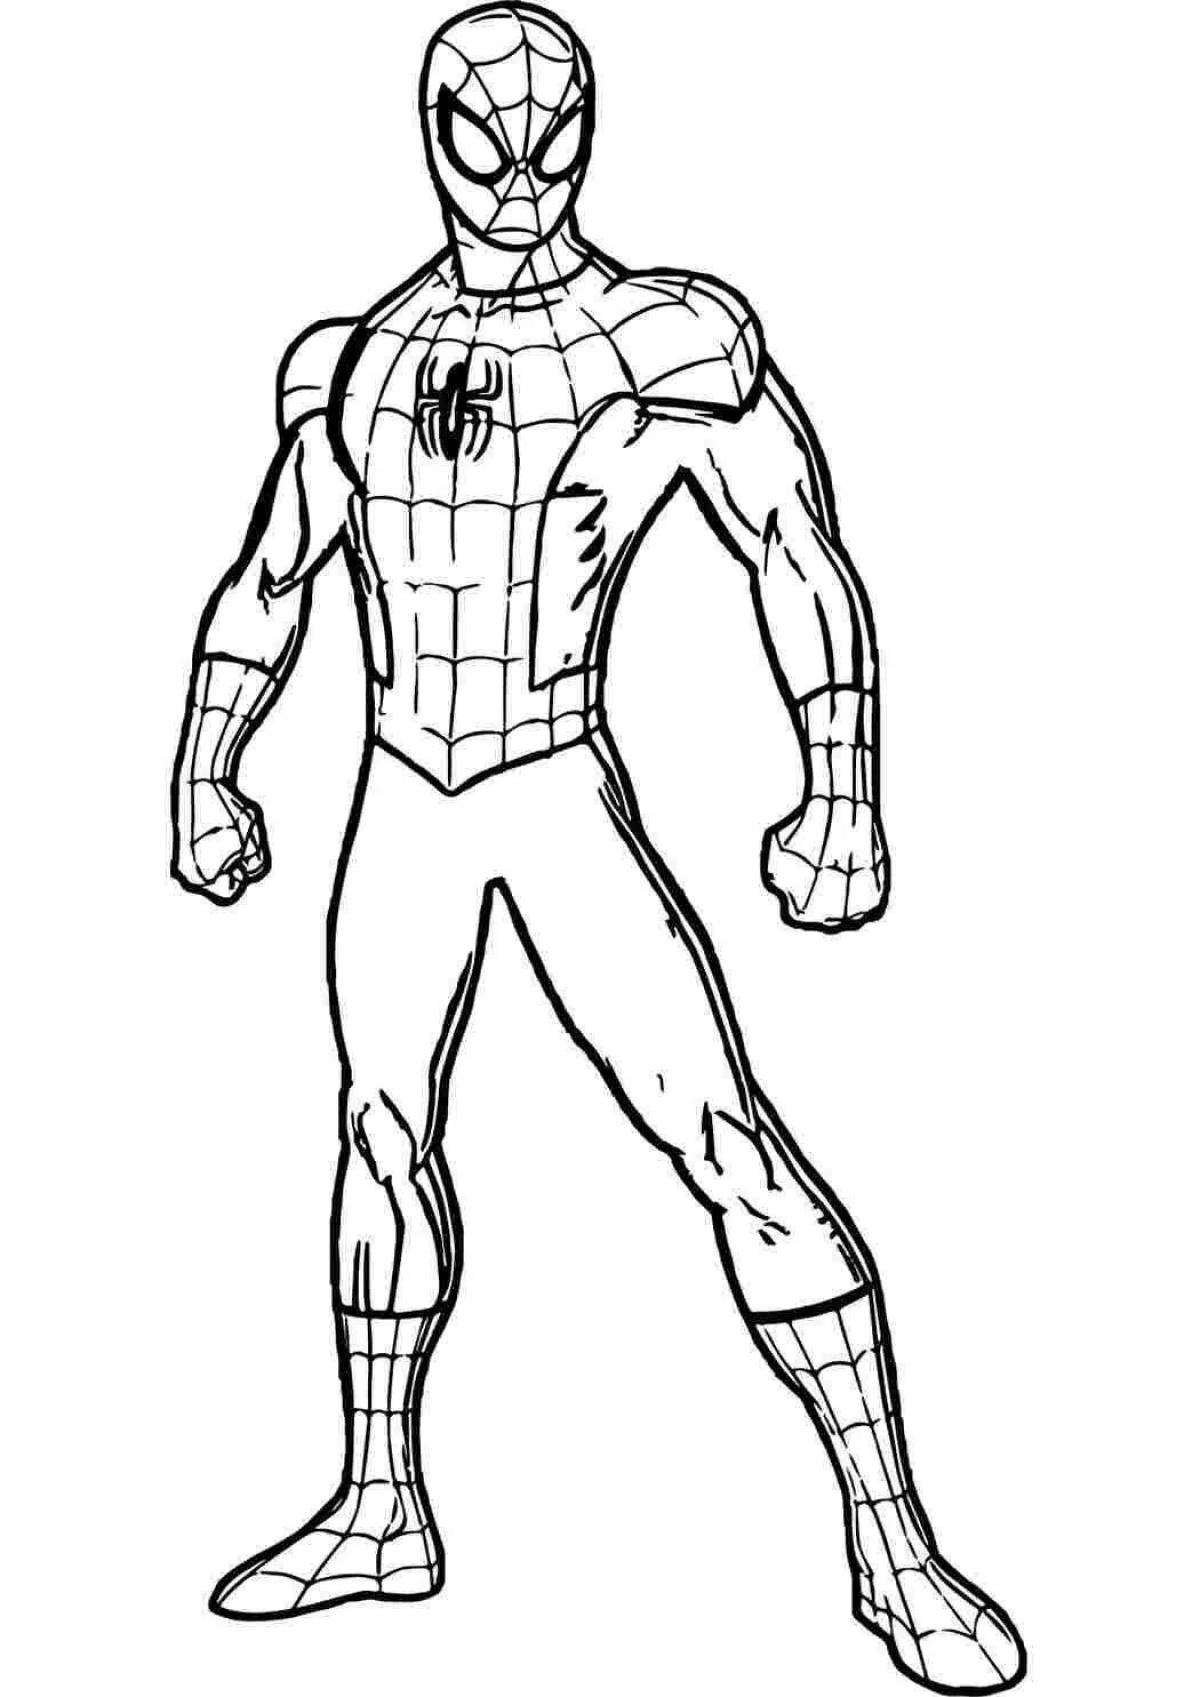 Coloring marvel superb spider-man